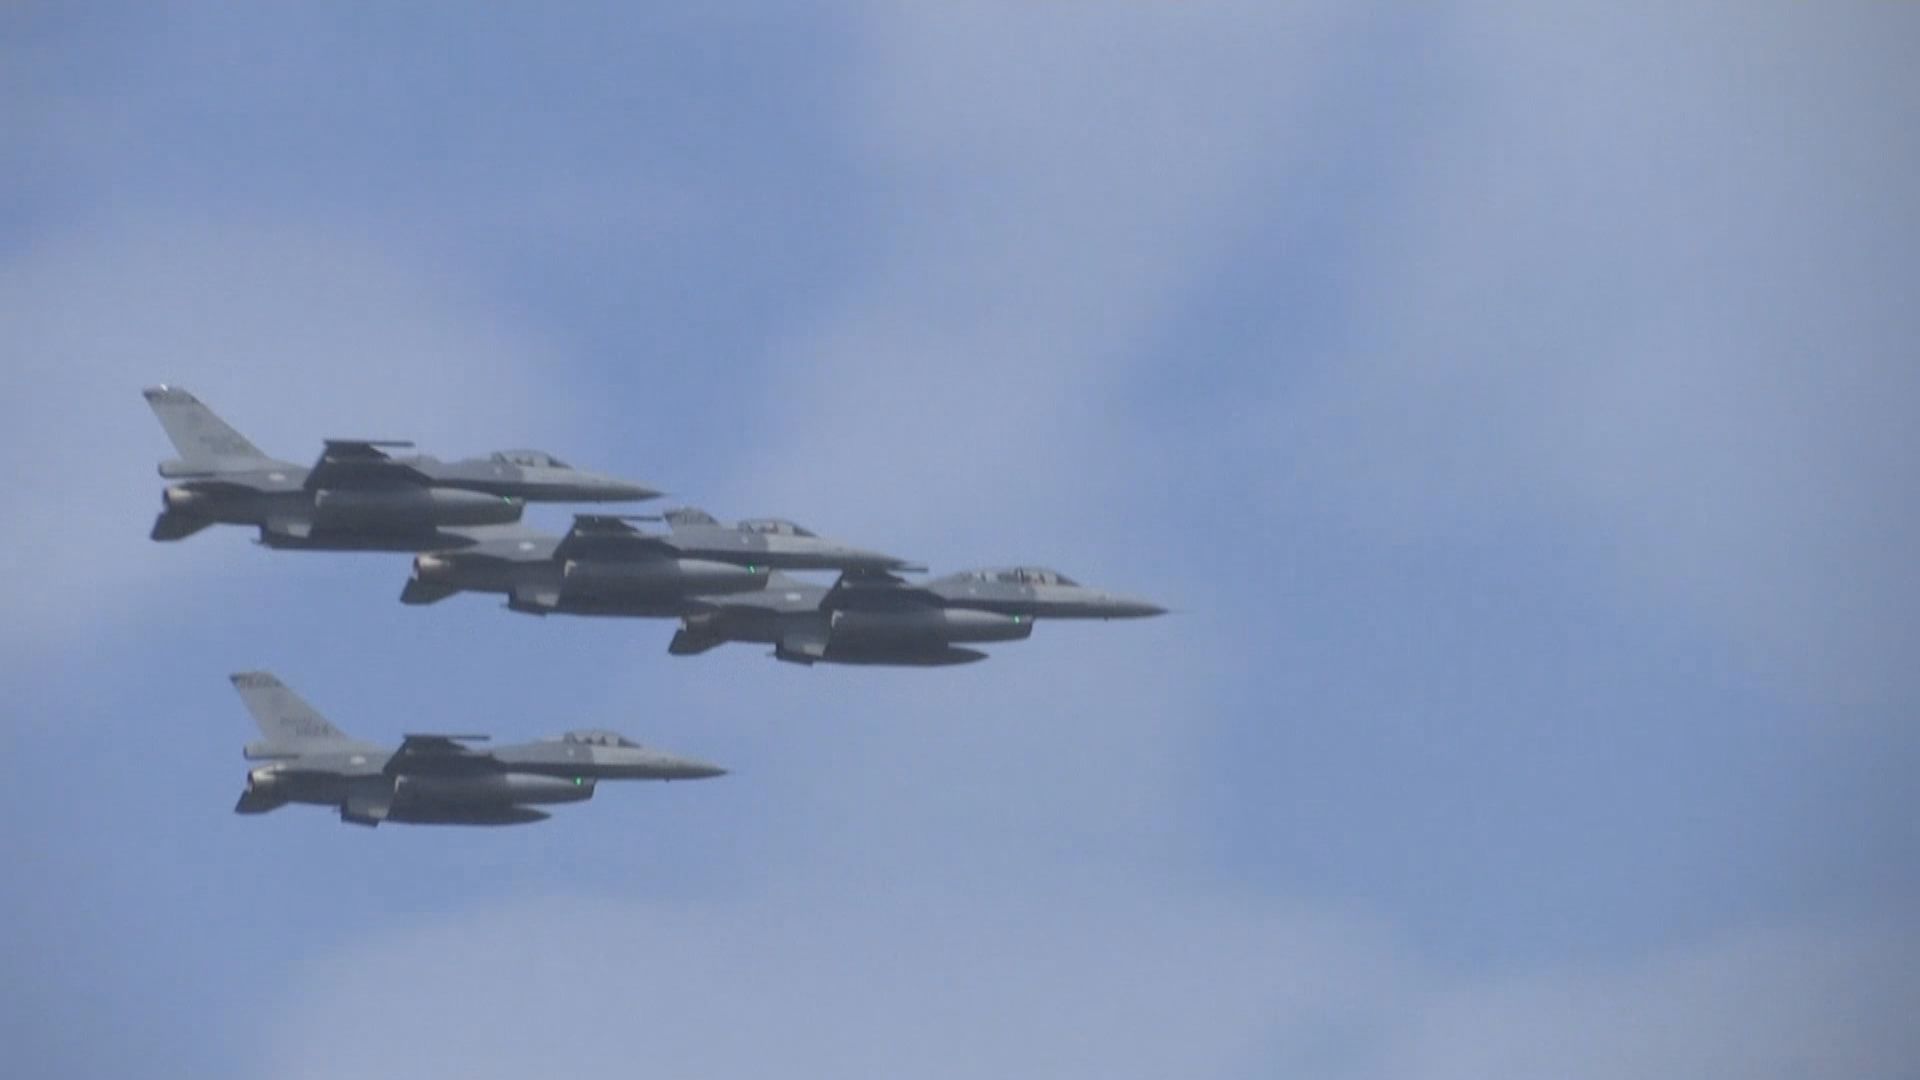 報道指美國研究提早向台灣交付F-16戰機